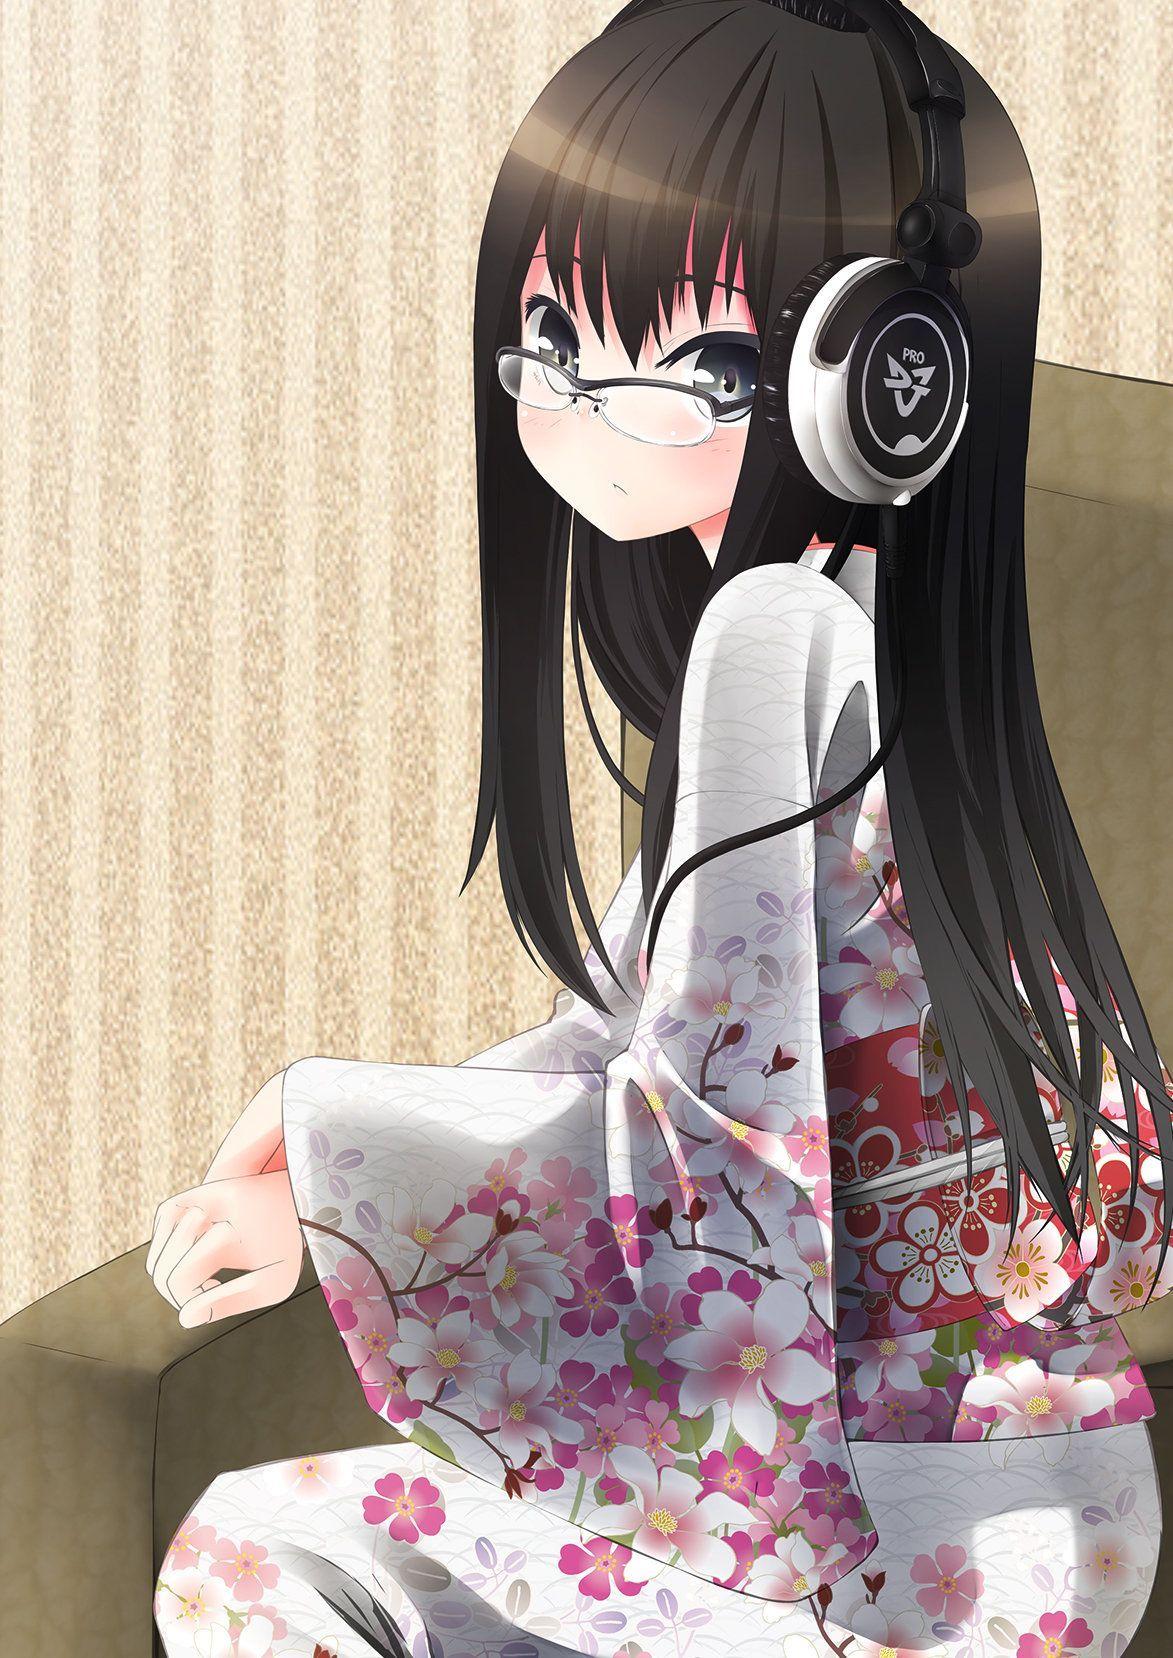 1173x1658 Tai nghe đeo kính kimono tóc đen dài.  Anime nền hình nền, Anime kimono, Ảnh anime